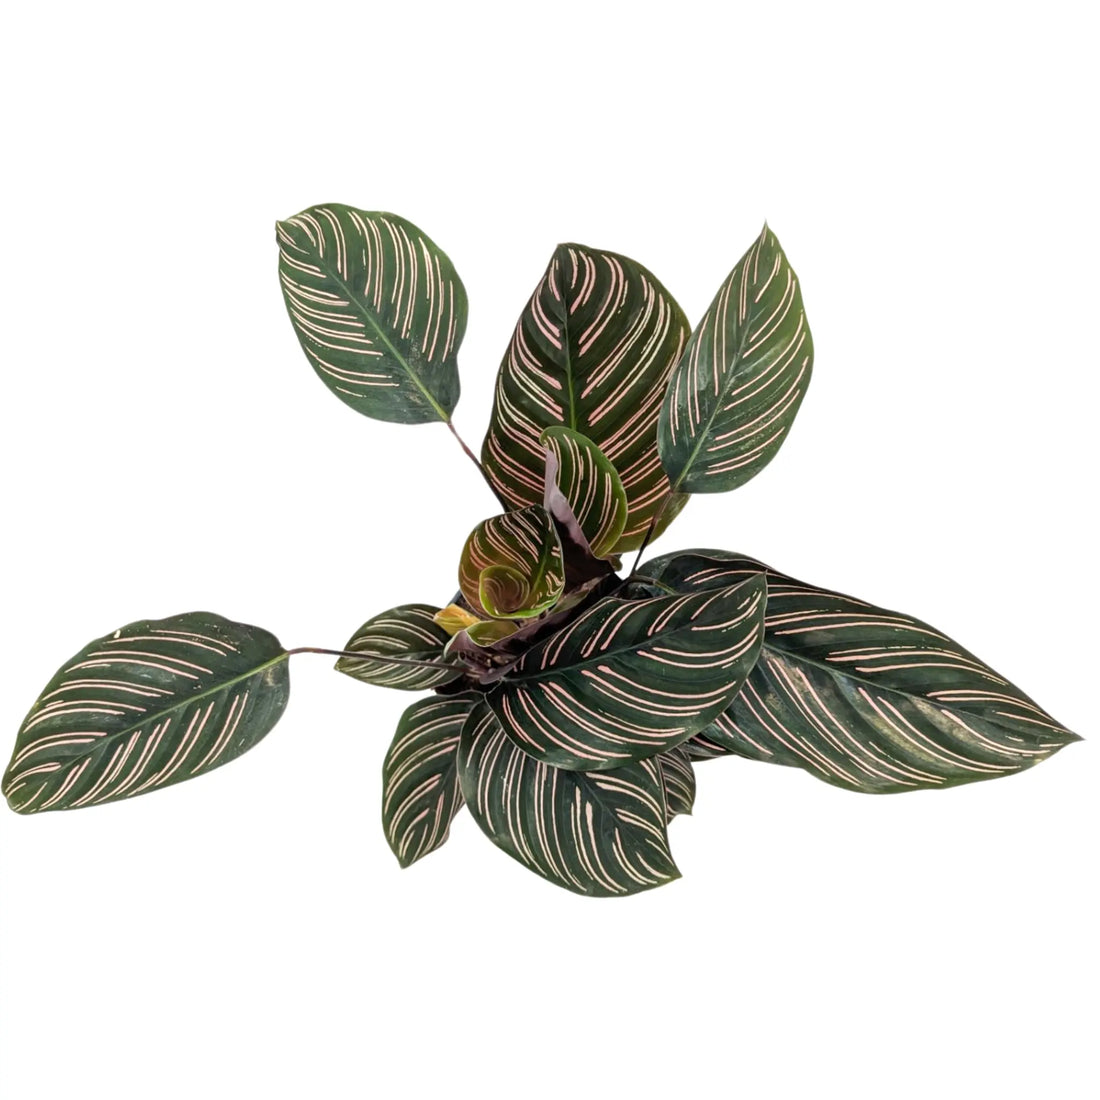 Calathea sanderiana Ornata - Pin Stripe Leaf Culture